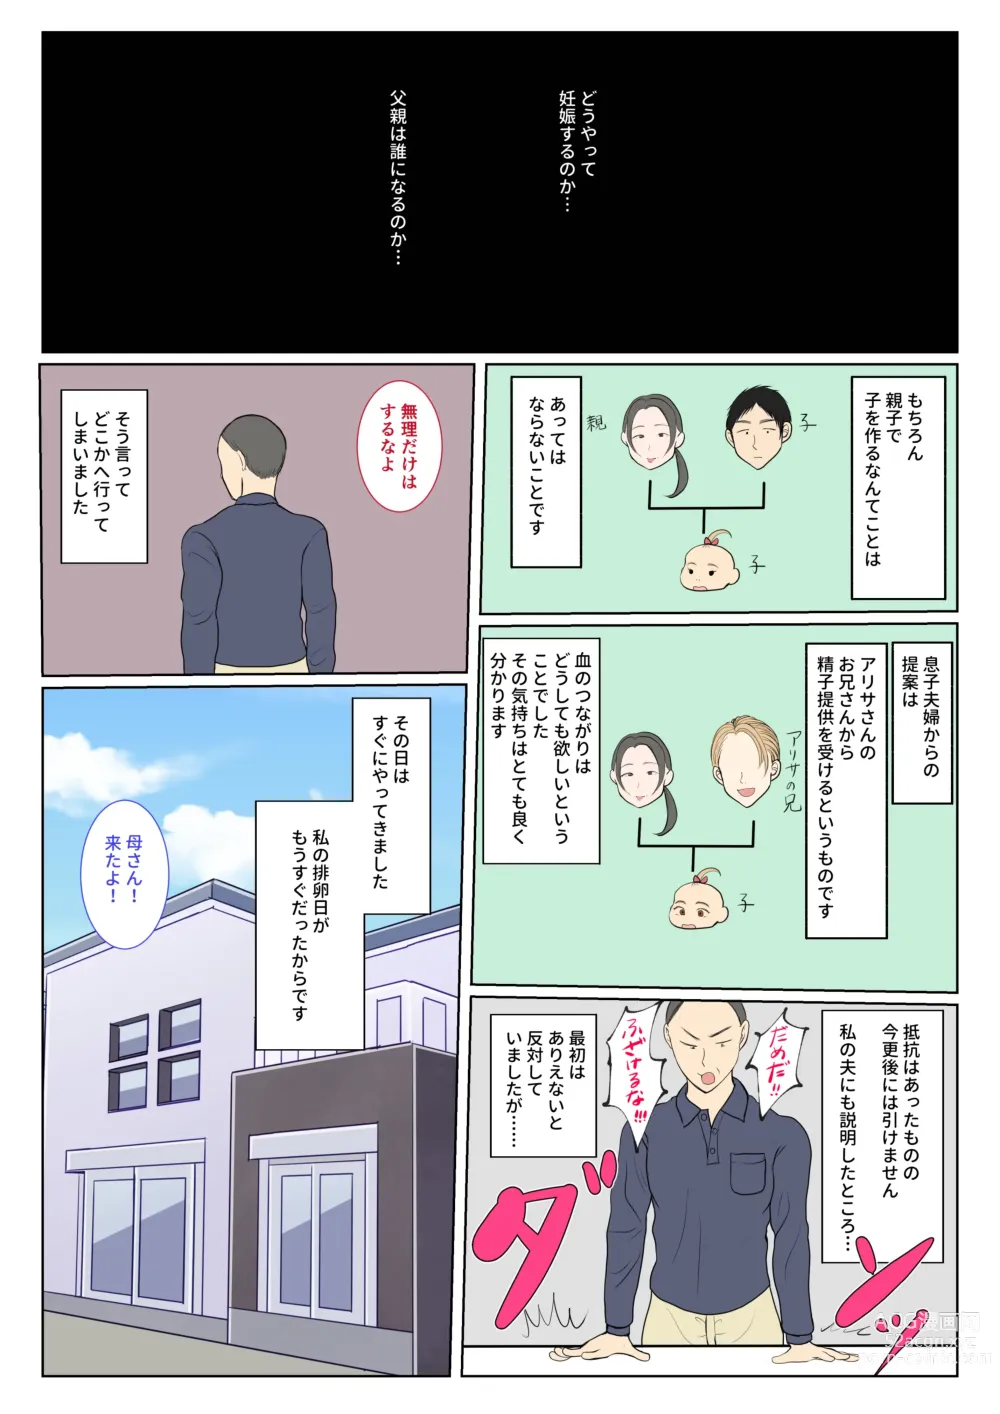 Page 11 of doujinshi Jitsubo Dairi Shussan 〜Nanae-hen〜